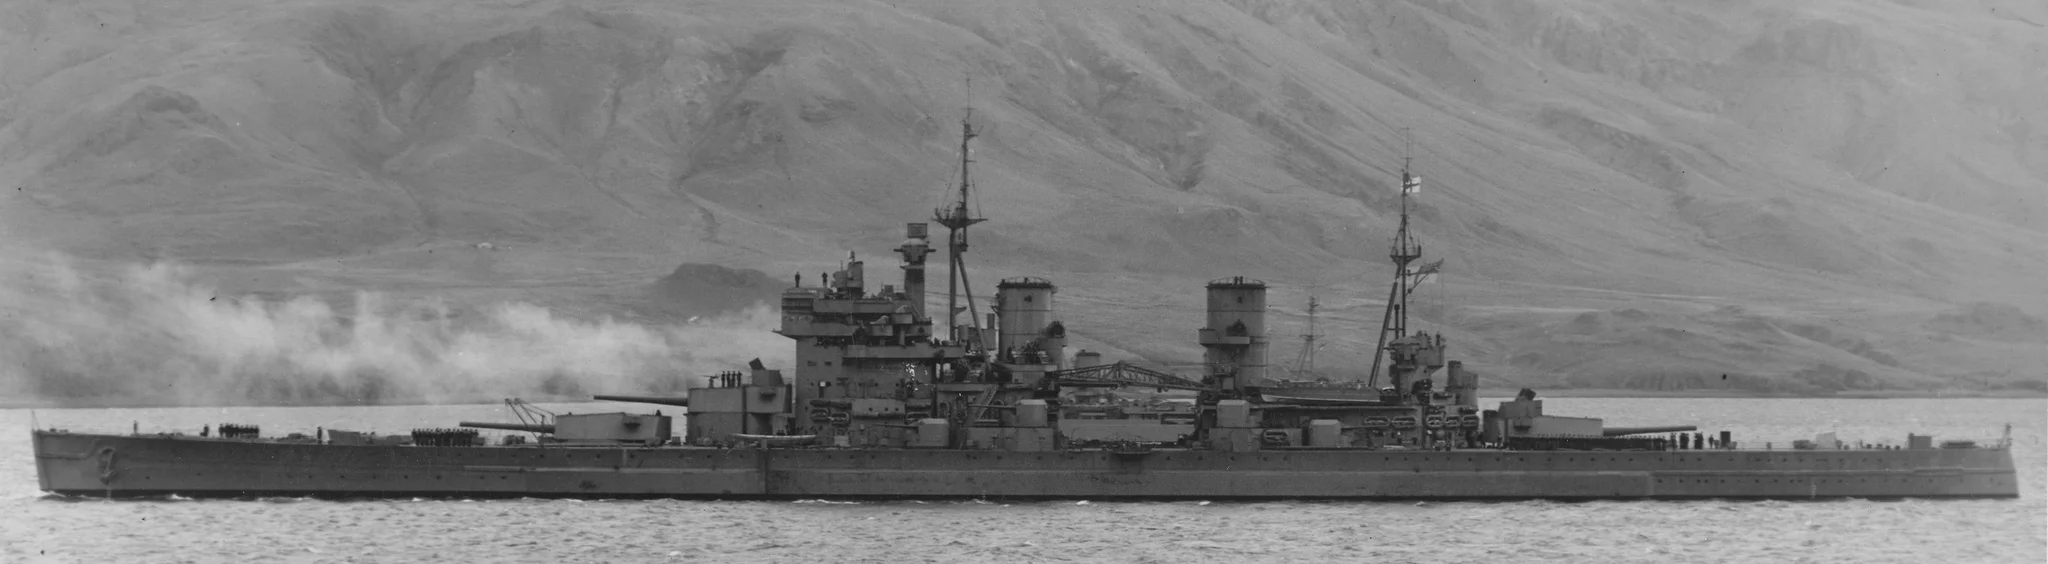 124975 - Линкор HMS King George V на стоянке в Хваль-фьорде, Исландия, 04 октября 1941 г.